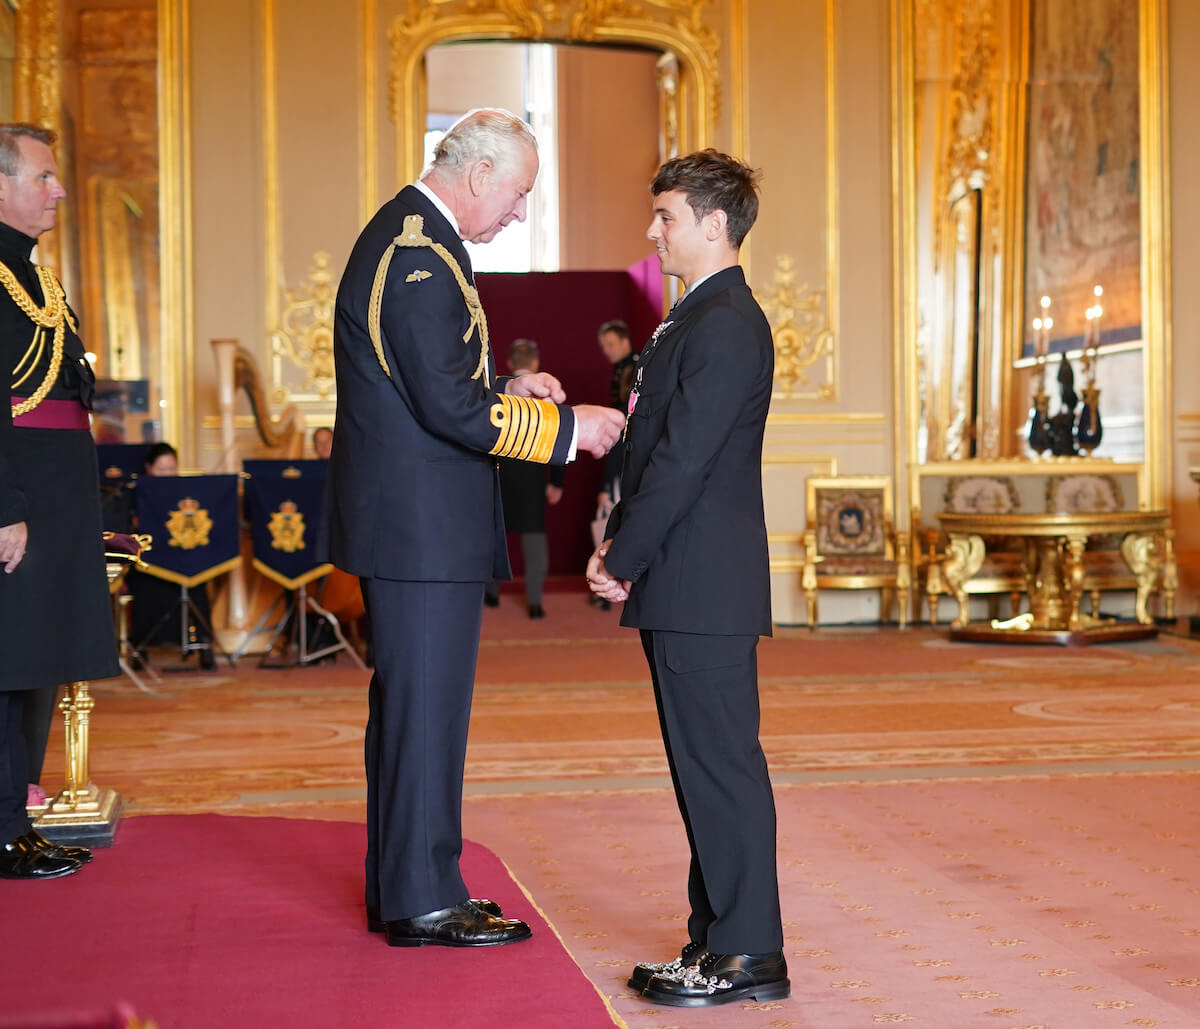 Tom Daley Ufficiale dell'Ordine dell'Impero Britannico. Ad insignirlo il principe Carlo, le foto - Tom Daley Ufficiale dellOrdine dellImpero Britannico 2 - Gay.it